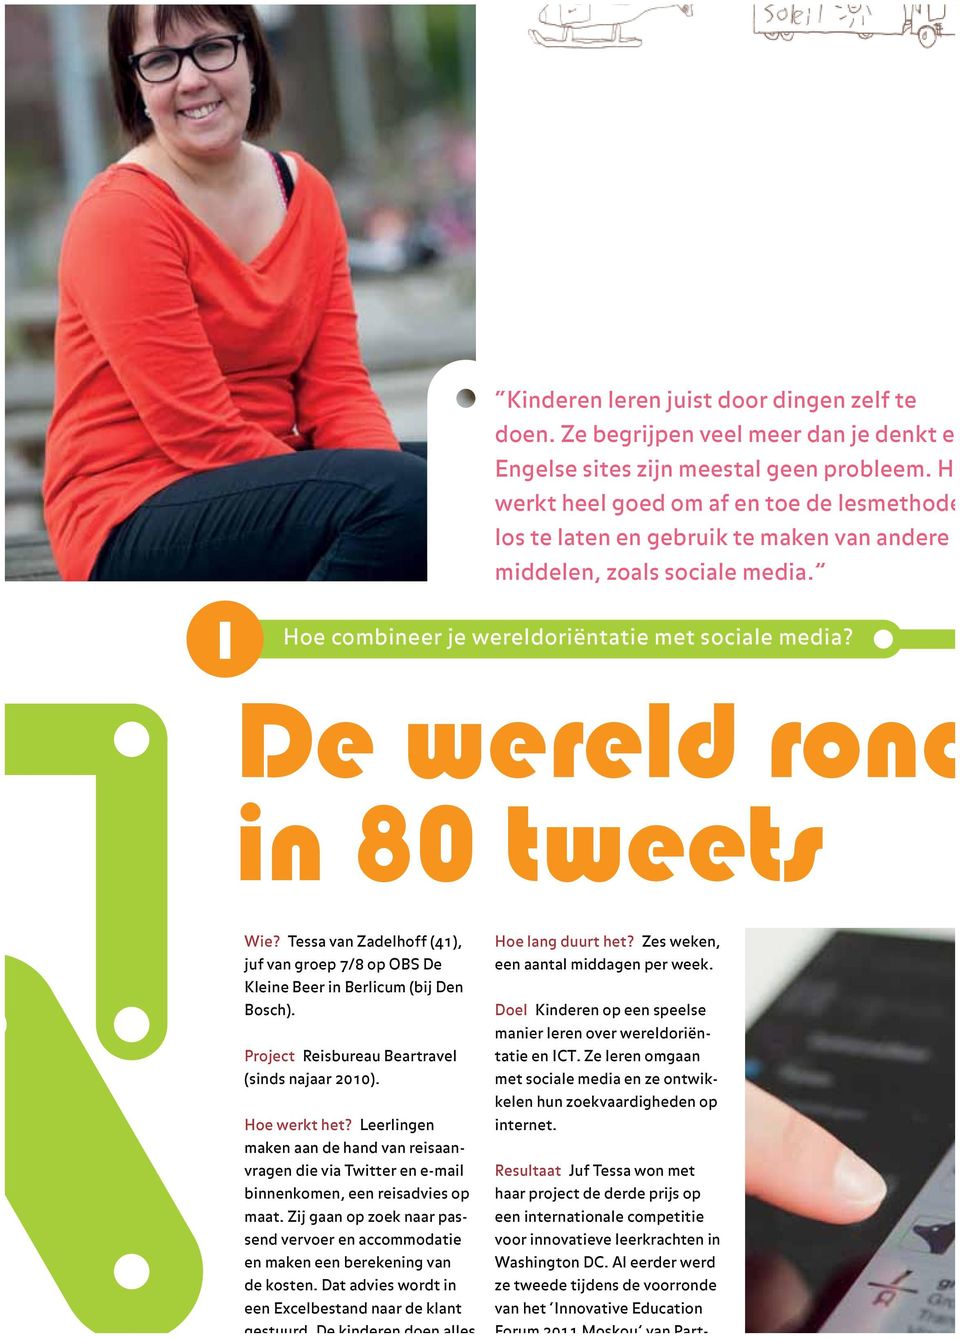 De wereld rond in 80 tweets Wie? Tessa van Zadelhoff (41), juf van groep 7/8 op OBS De Kleine Beer in Berlicum (bij Den Bosch). Project Reisbureau Beartravel (sinds najaar 2010). Hoe werkt het?